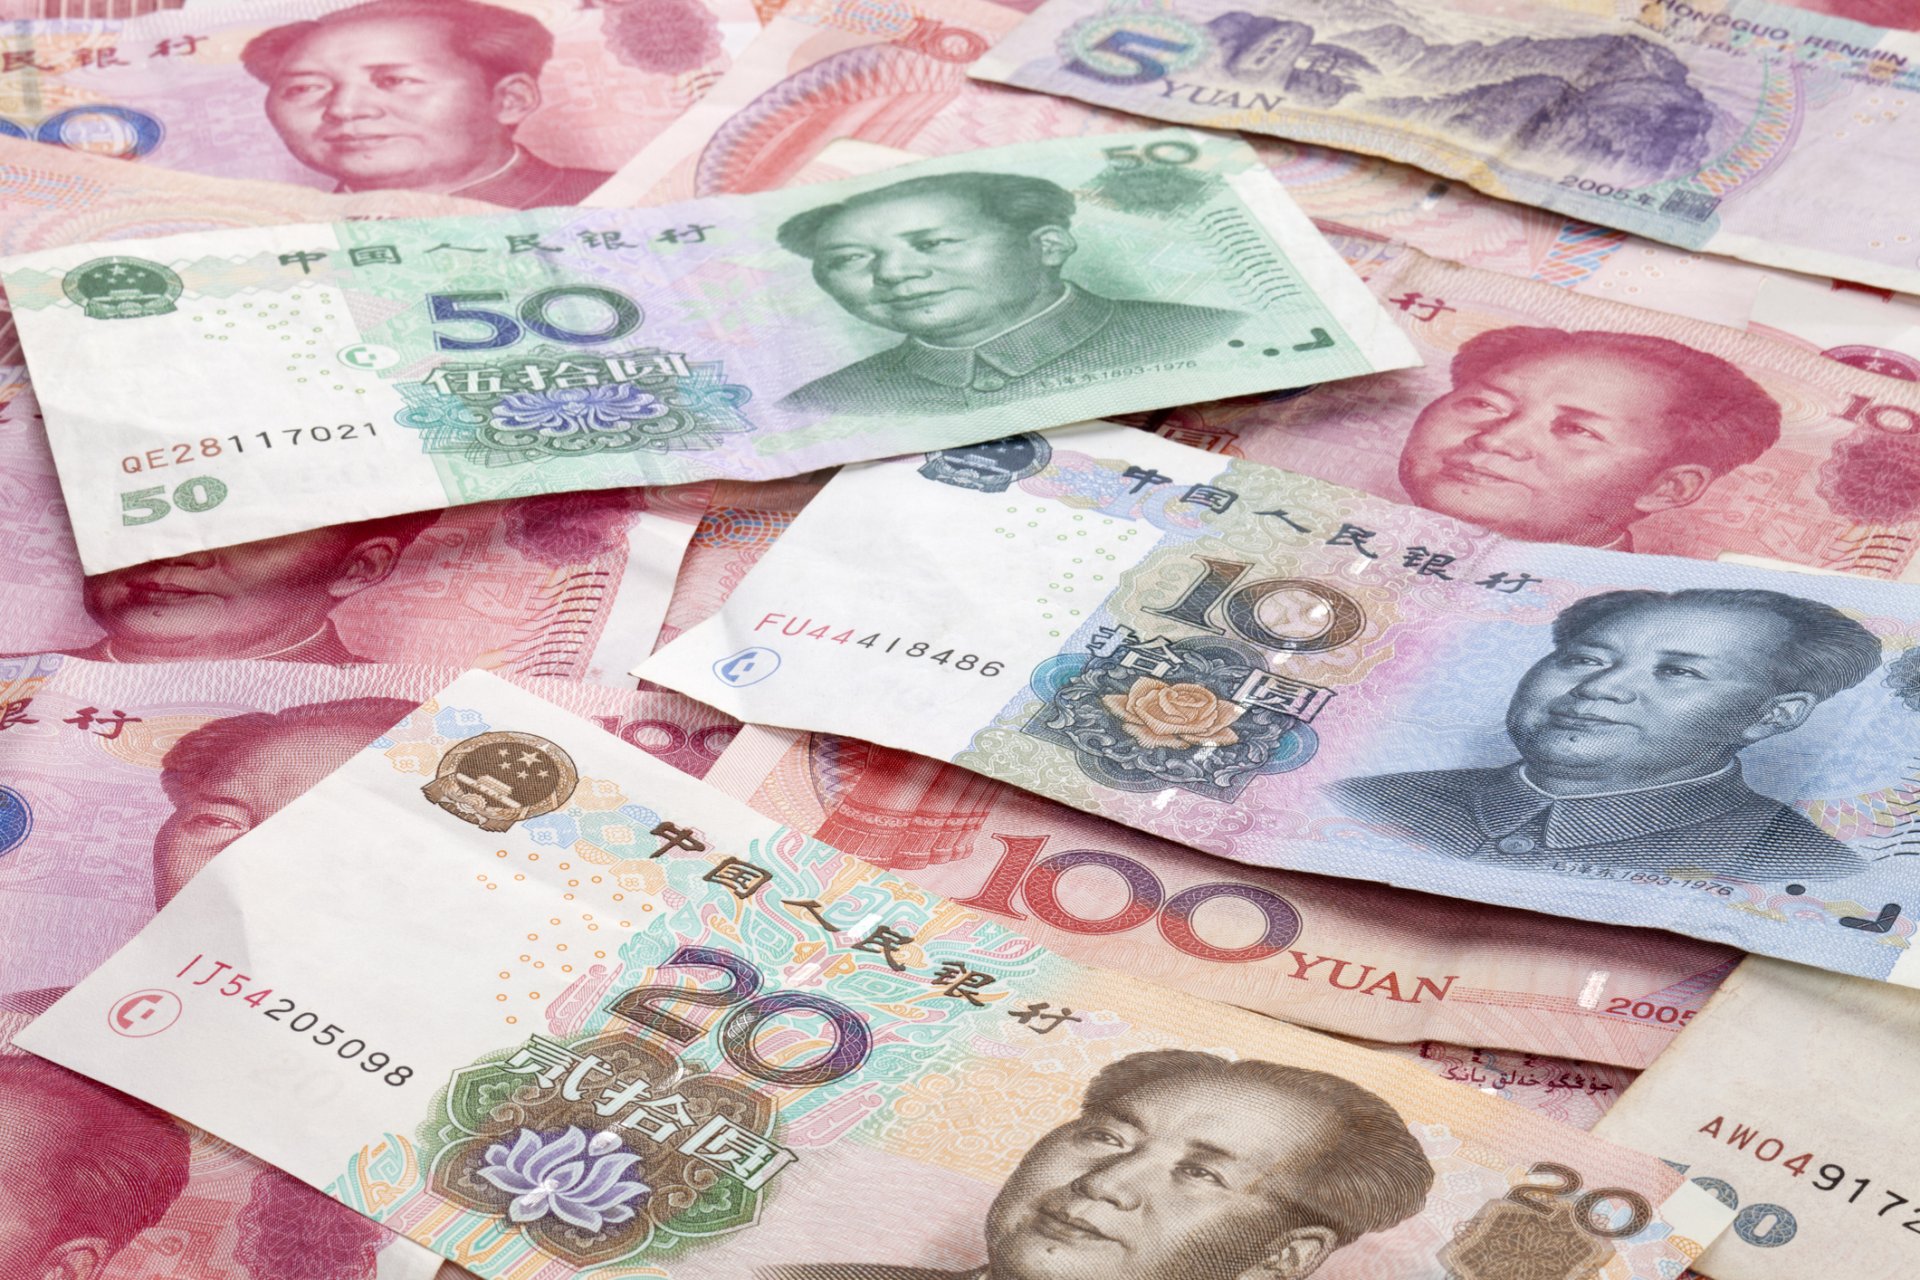 Тысяча долларов в юанях. Валюта Китая юань. Деньги Китая юань. Китайский юань жэньминьби. Юань (валюта).